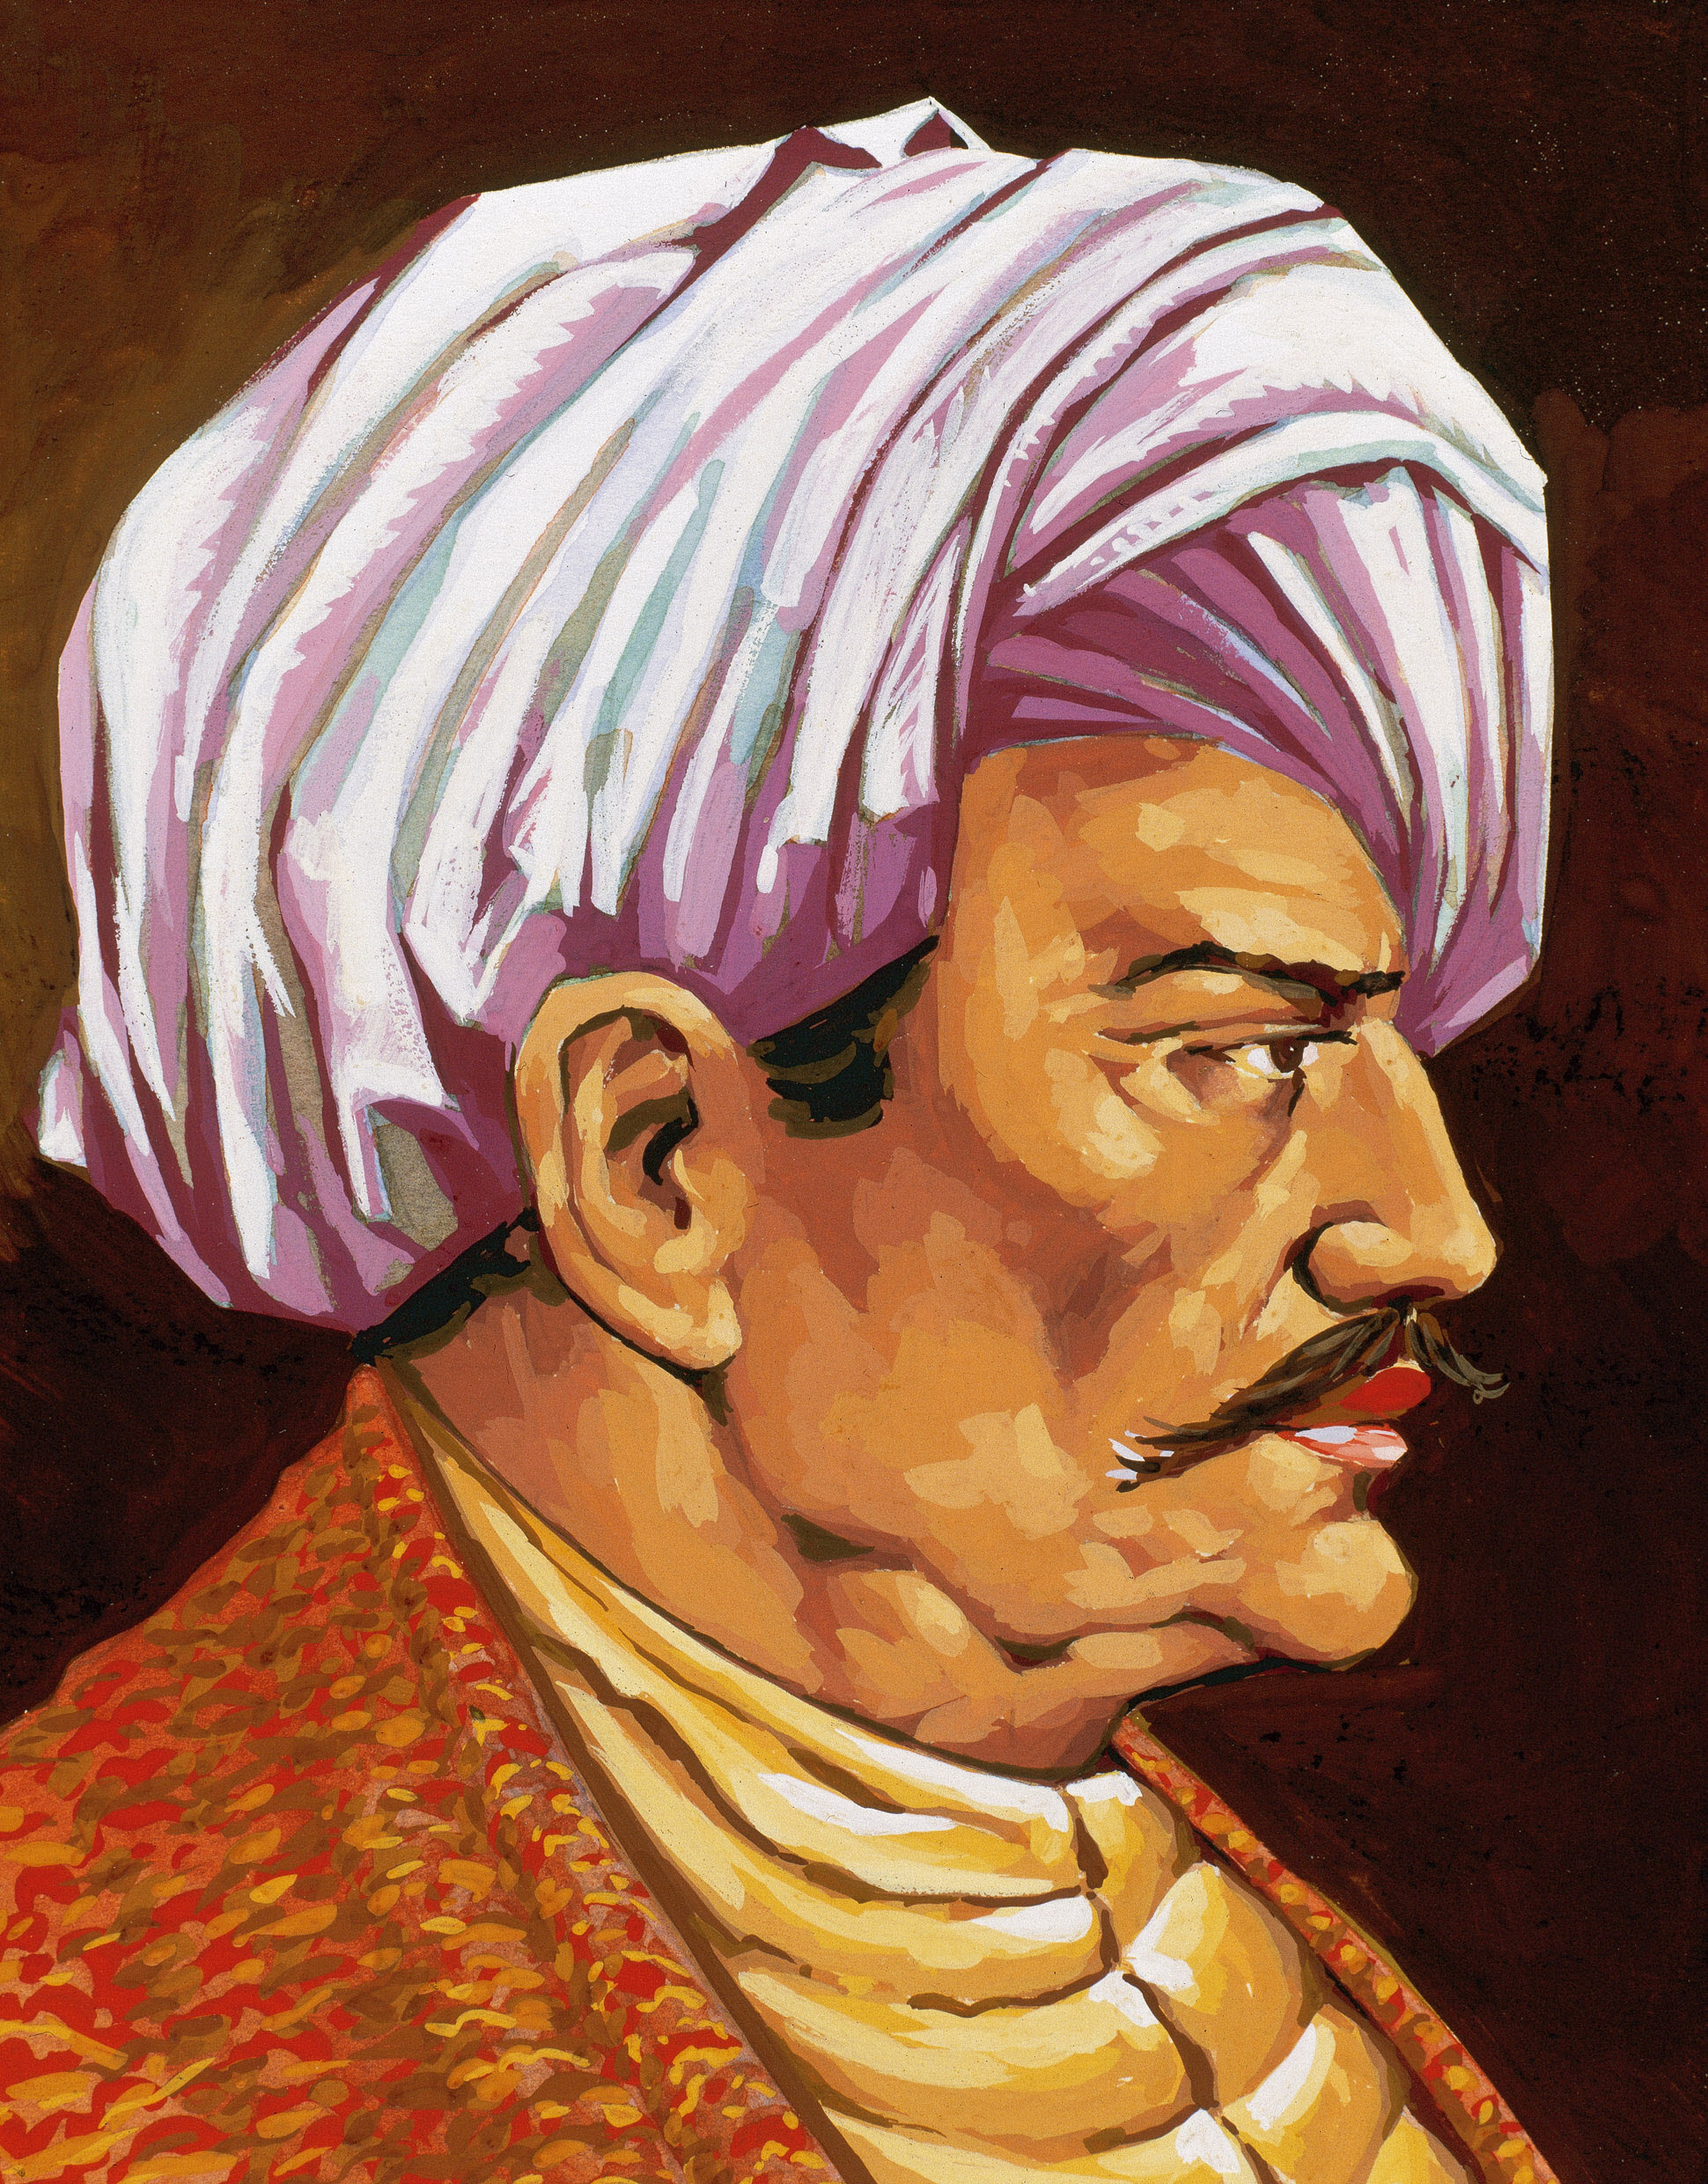 Averroës, eredeti nevén ibn Rusd közpkori arab filozófus Francisco Fonollosa festményén